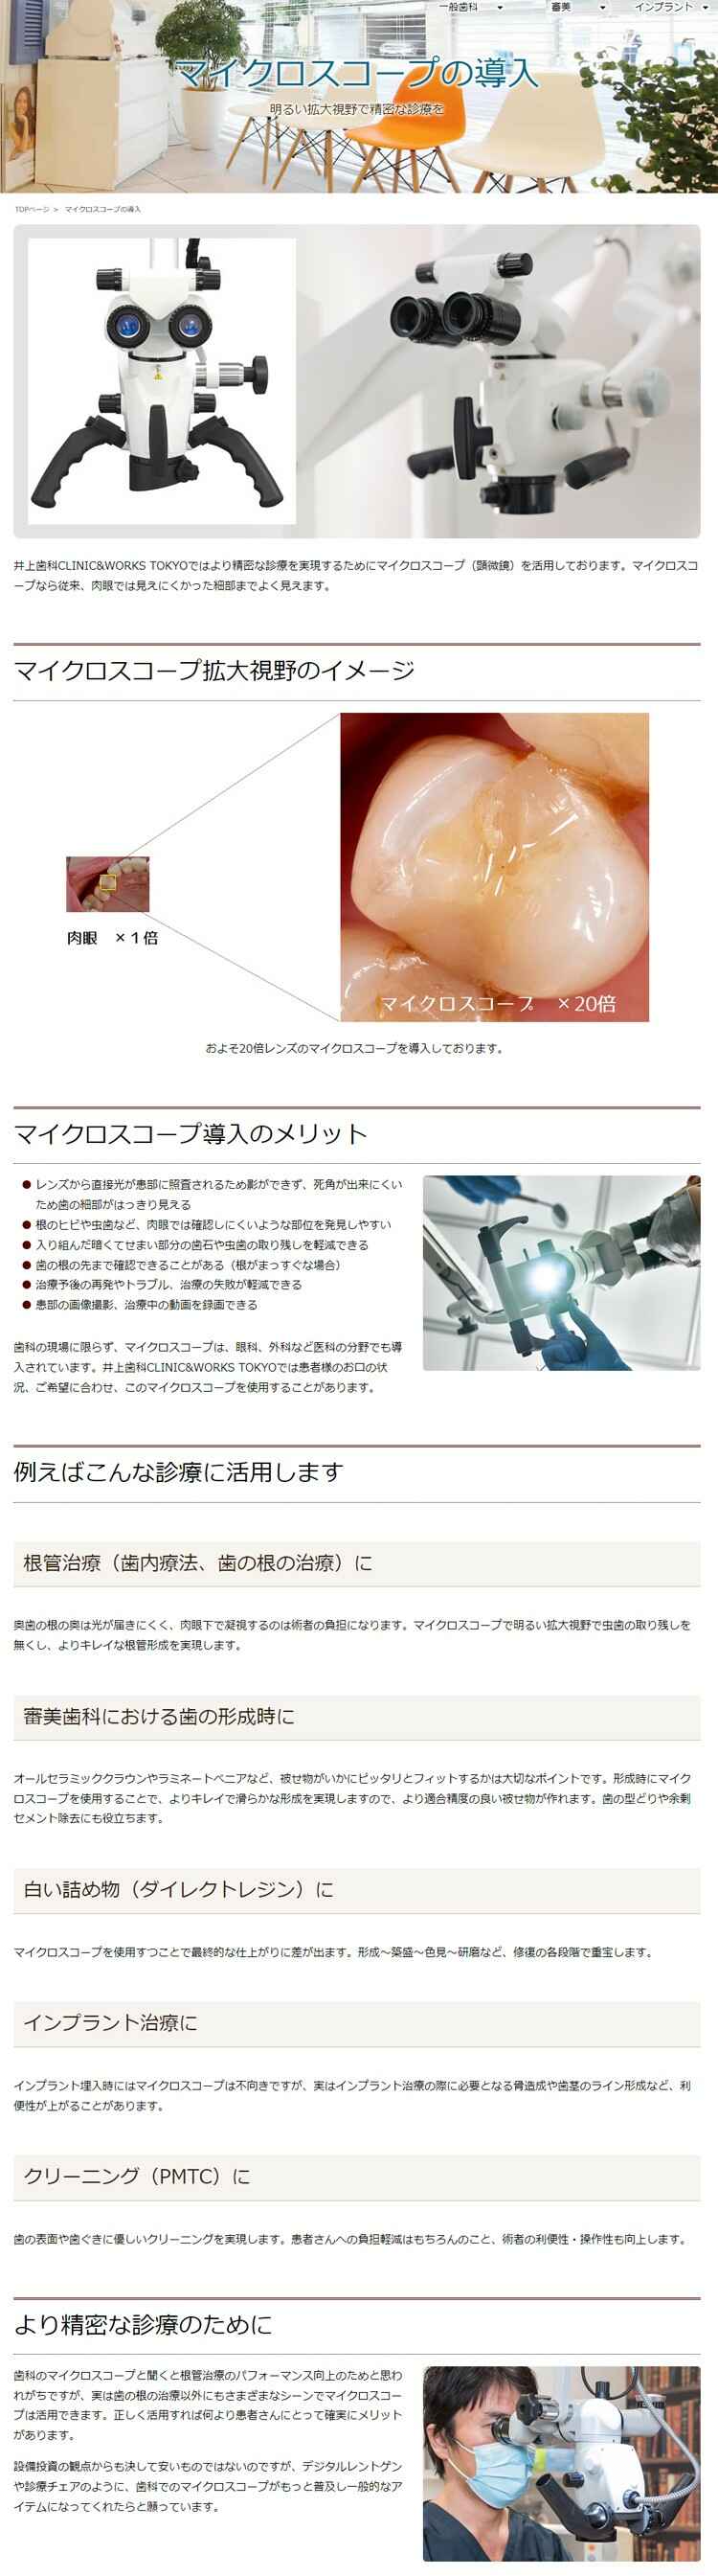 井上歯科CLINIC&WORKS TOKYOのお知らせ内容